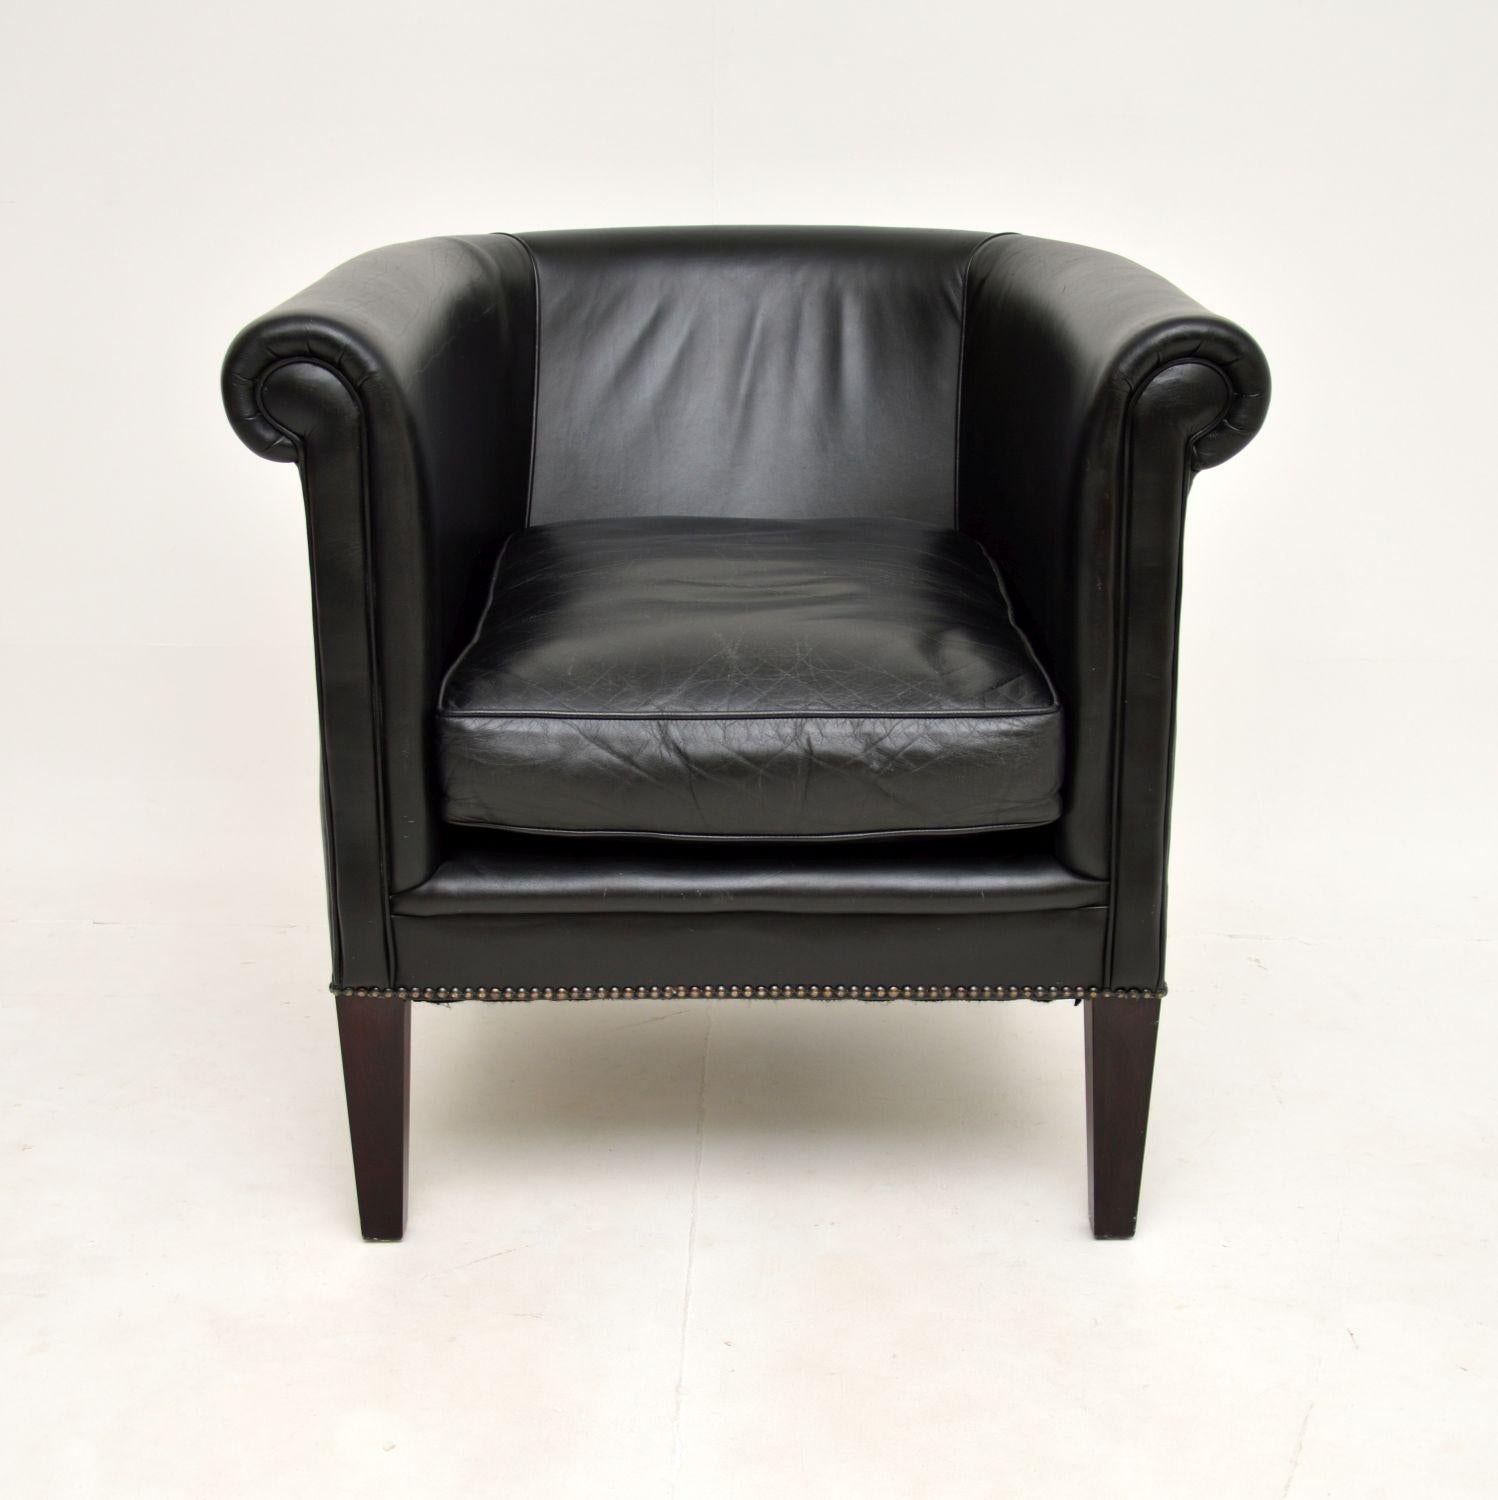 Un fauteuil en cuir antique de style géorgien, élégant et extrêmement bien fait, par Laura Ashley. Elle date de la fin du 20e siècle.

Il est magnifiquement conçu, très confortable et d'une superbe qualité.

L'état est excellent pour son âge, le